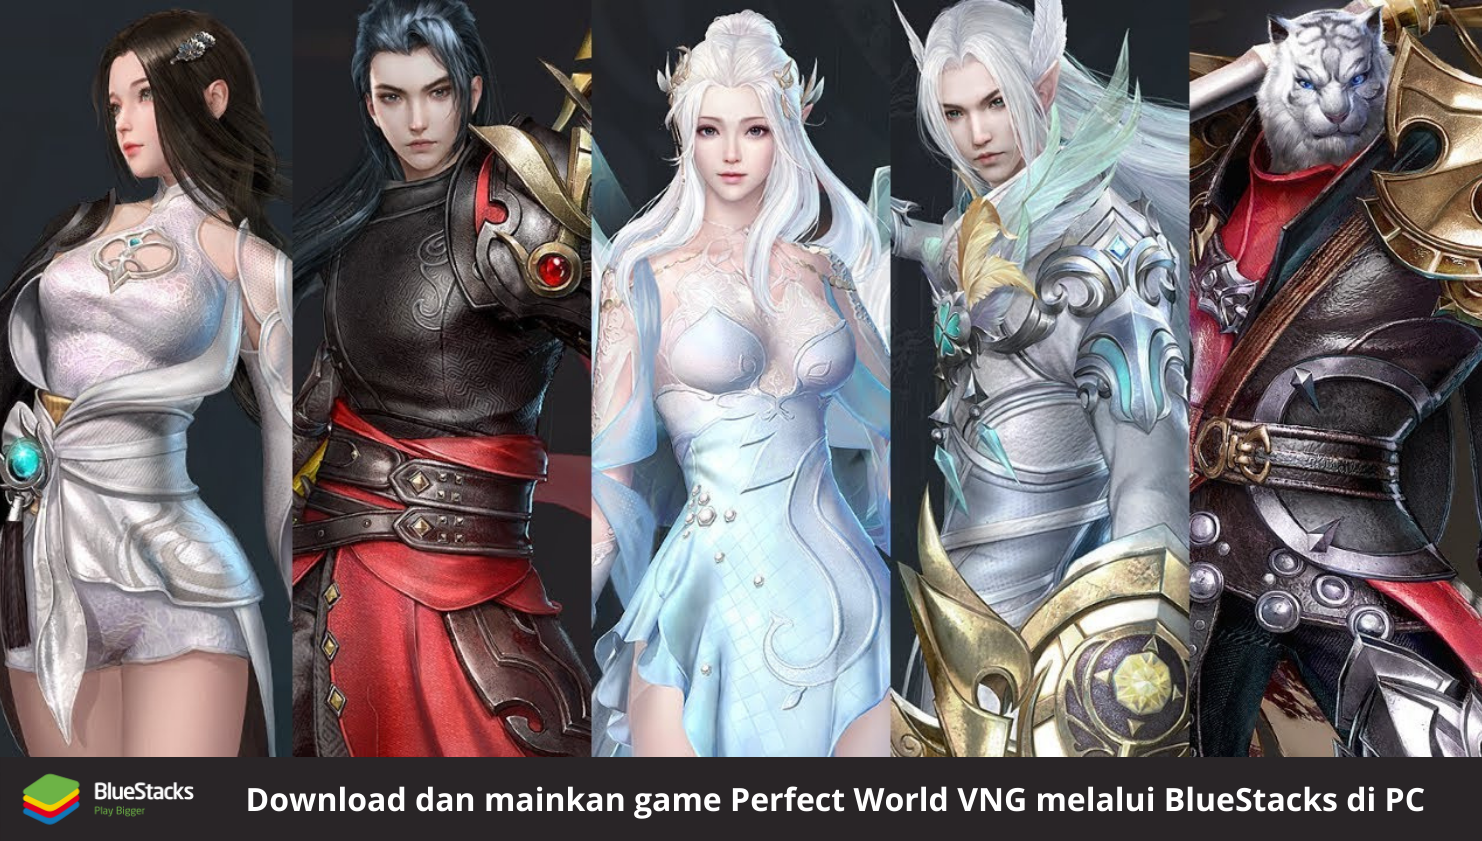 Perfect World VNG: Panduan Karakter & Yang Terbaik dalam Game Untuk Newbie